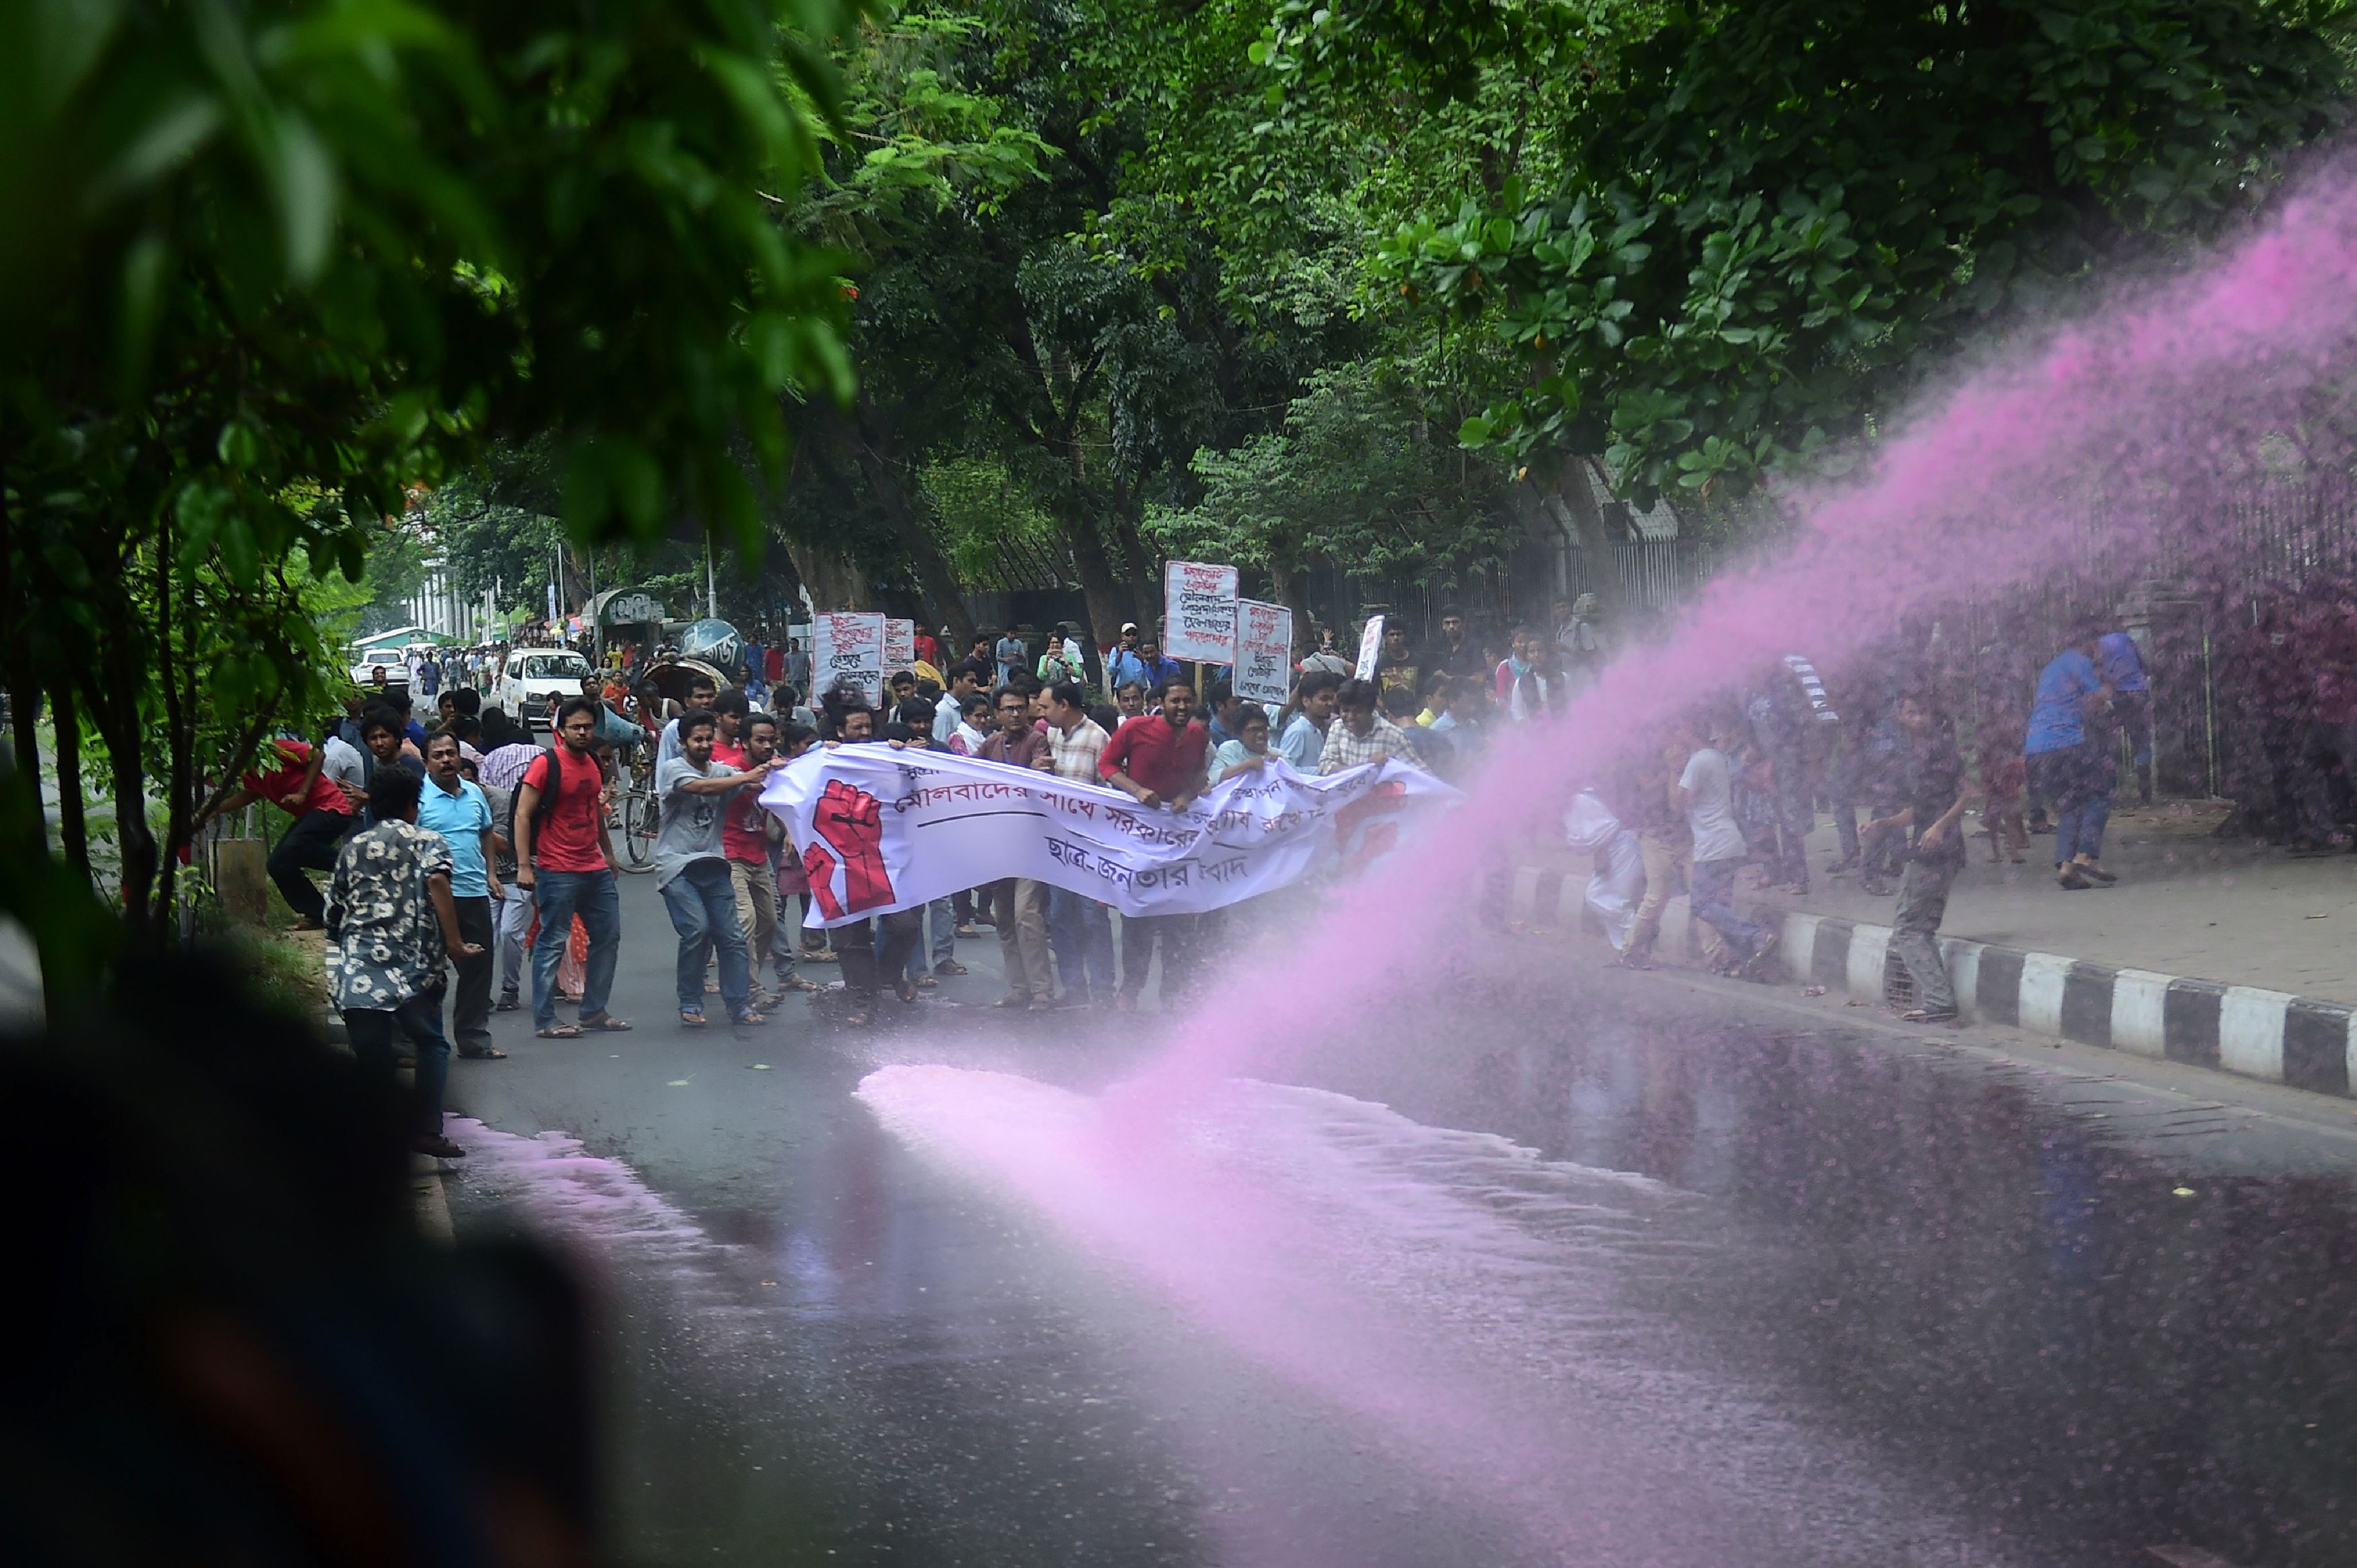 استخدام الزاز الملون لفض مظاهرات فى بنجلادش